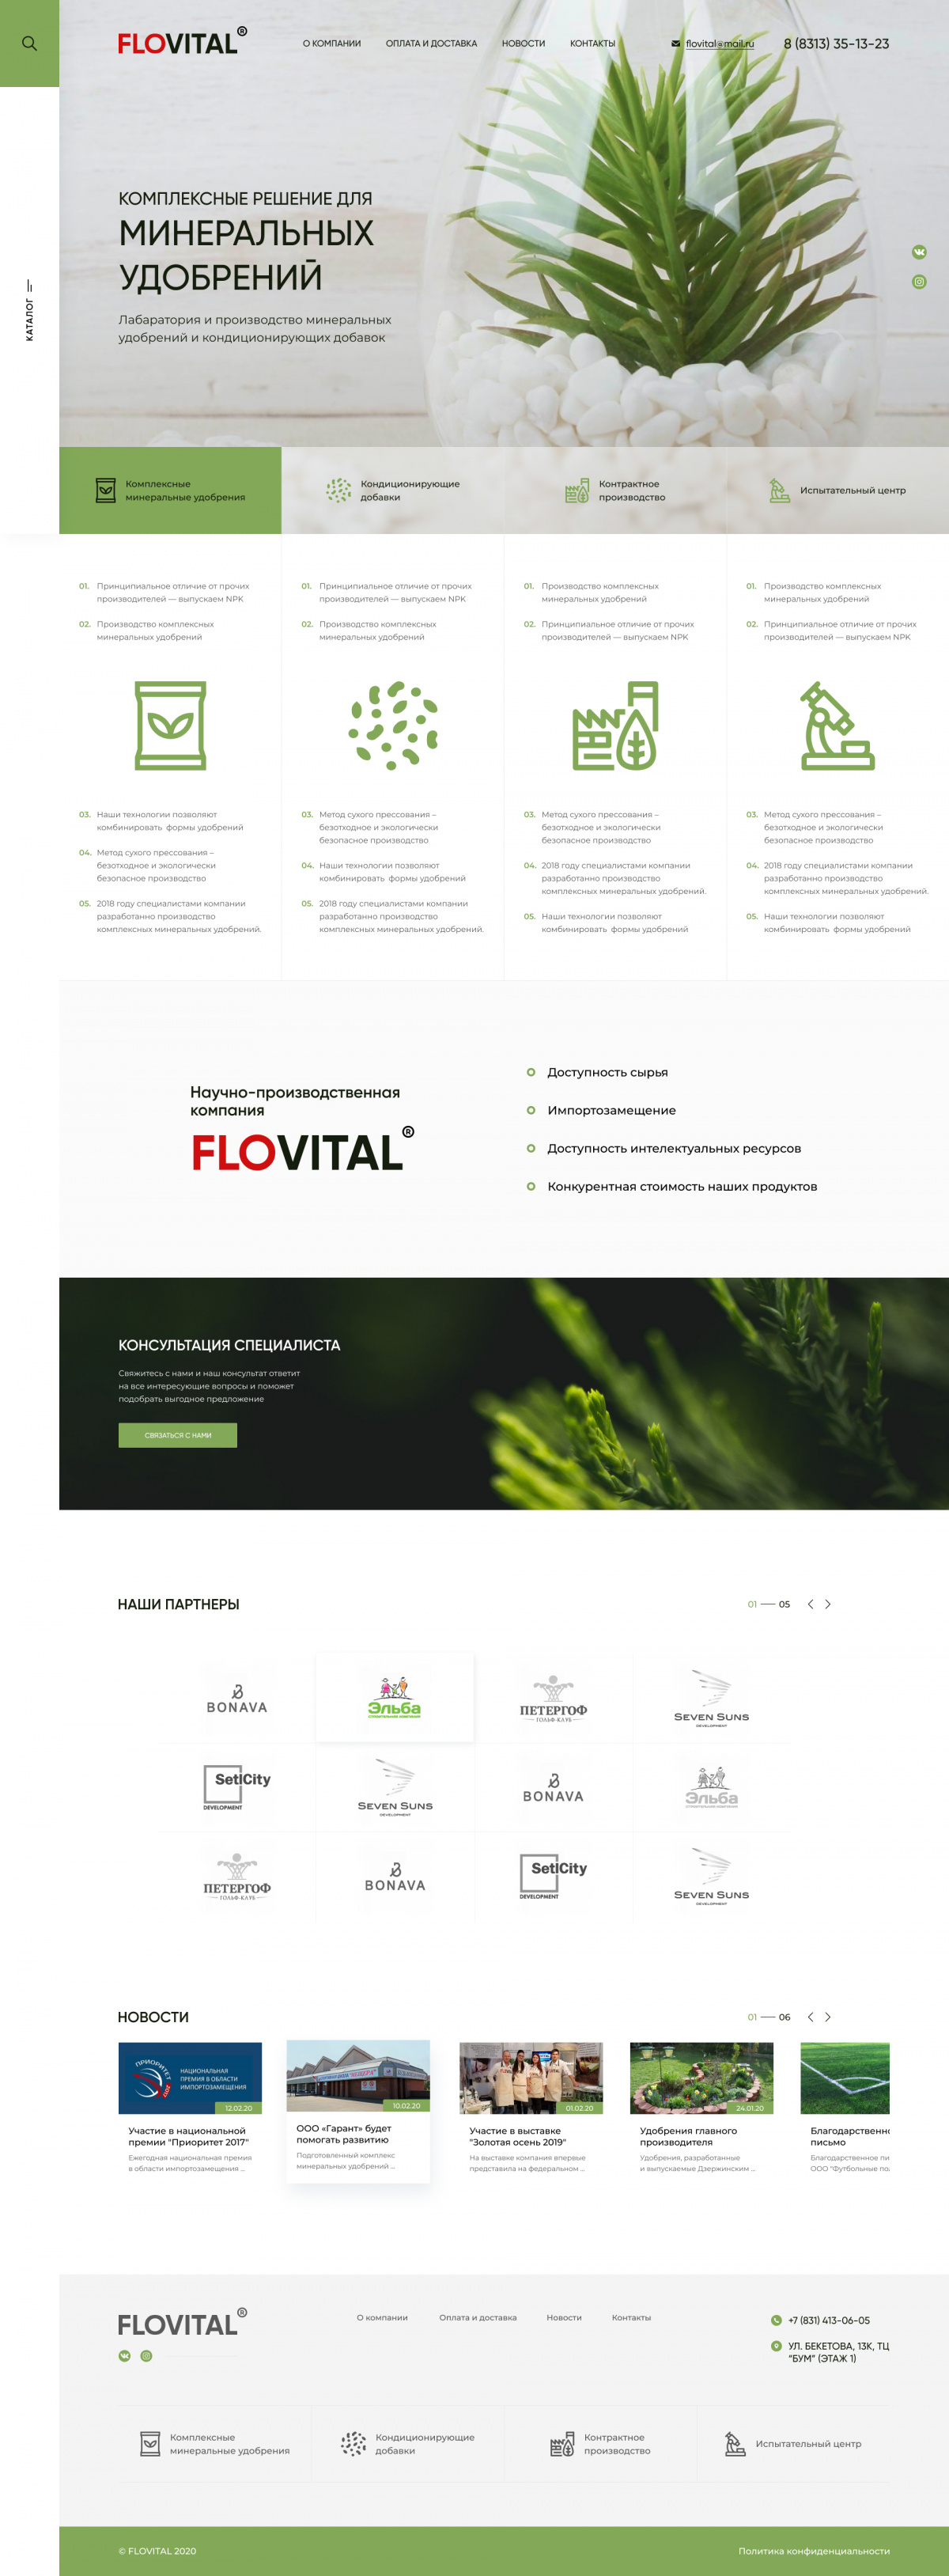 Разработка корпоративного сайта компании FloVital